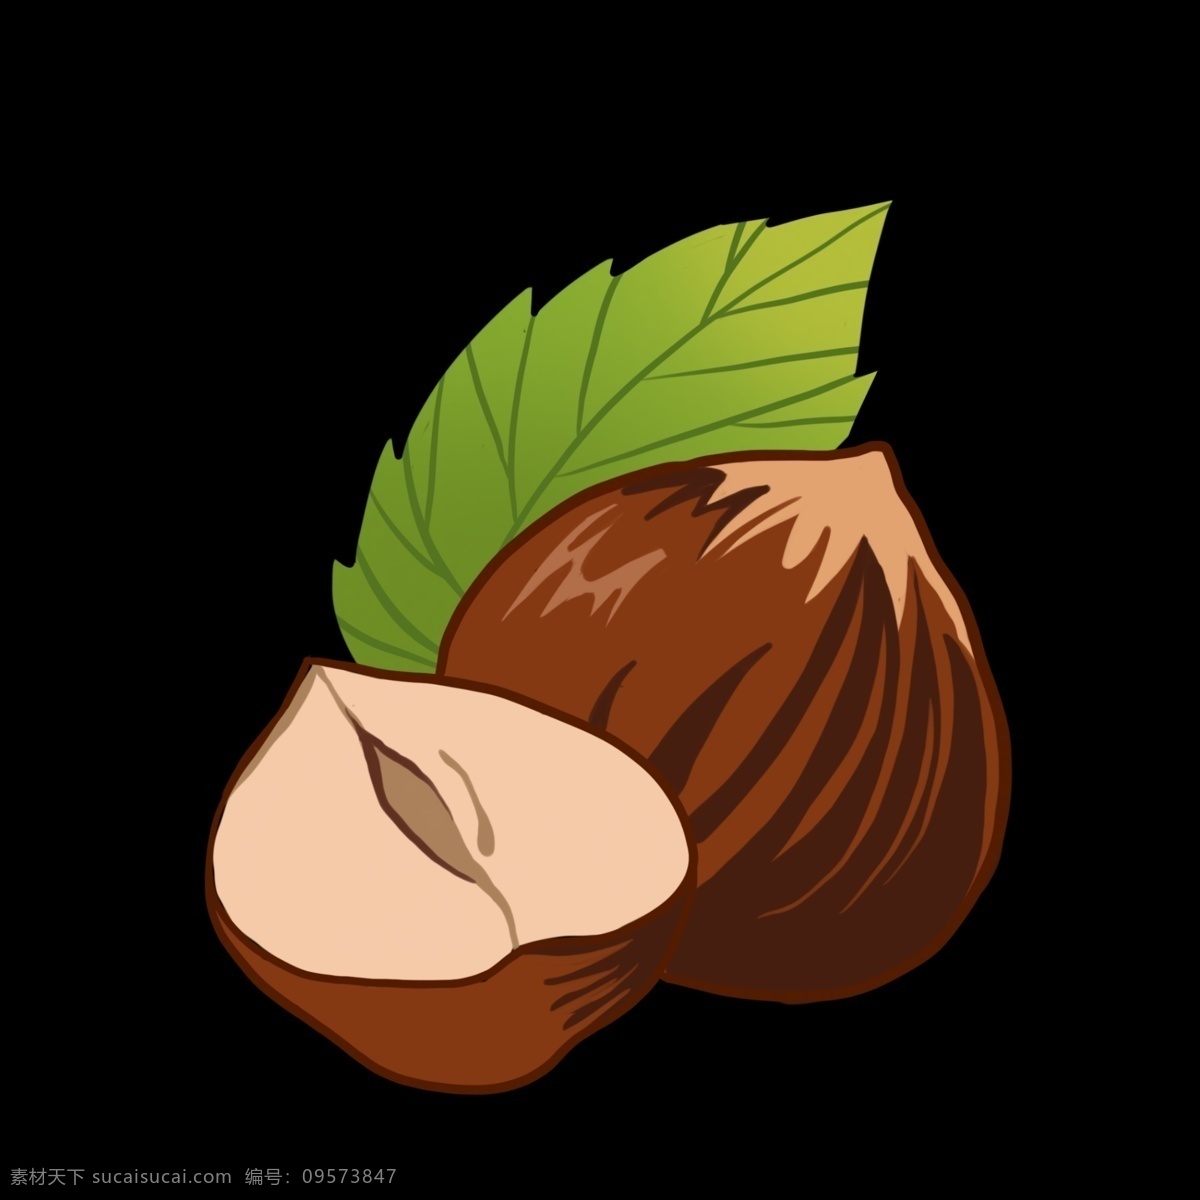 切开 板栗 图案 插图 卡通坚果 棕色板栗 切开的板栗 绿色叶子 图案设计 成熟的果实 秋收的季节 坚果零食